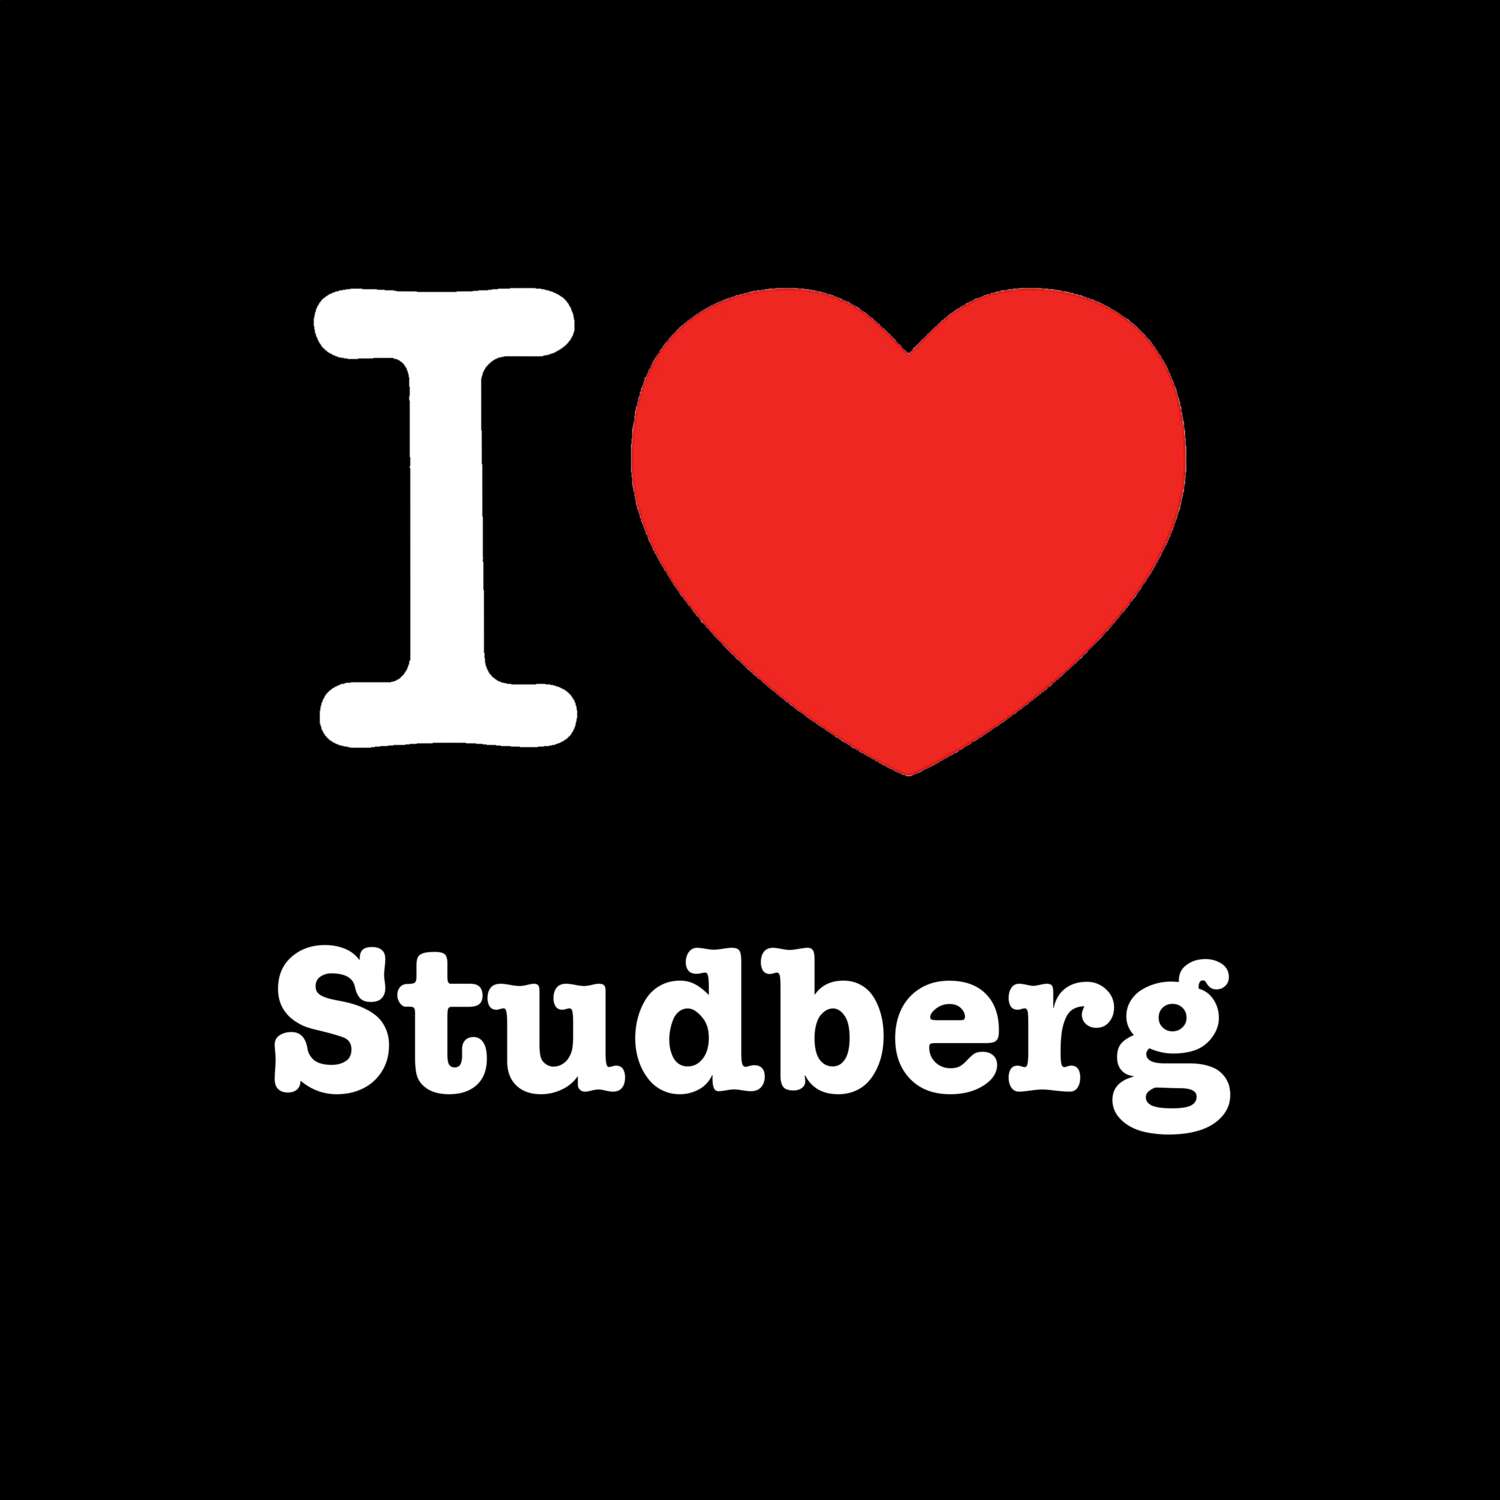 Studberg T-Shirt »I love«